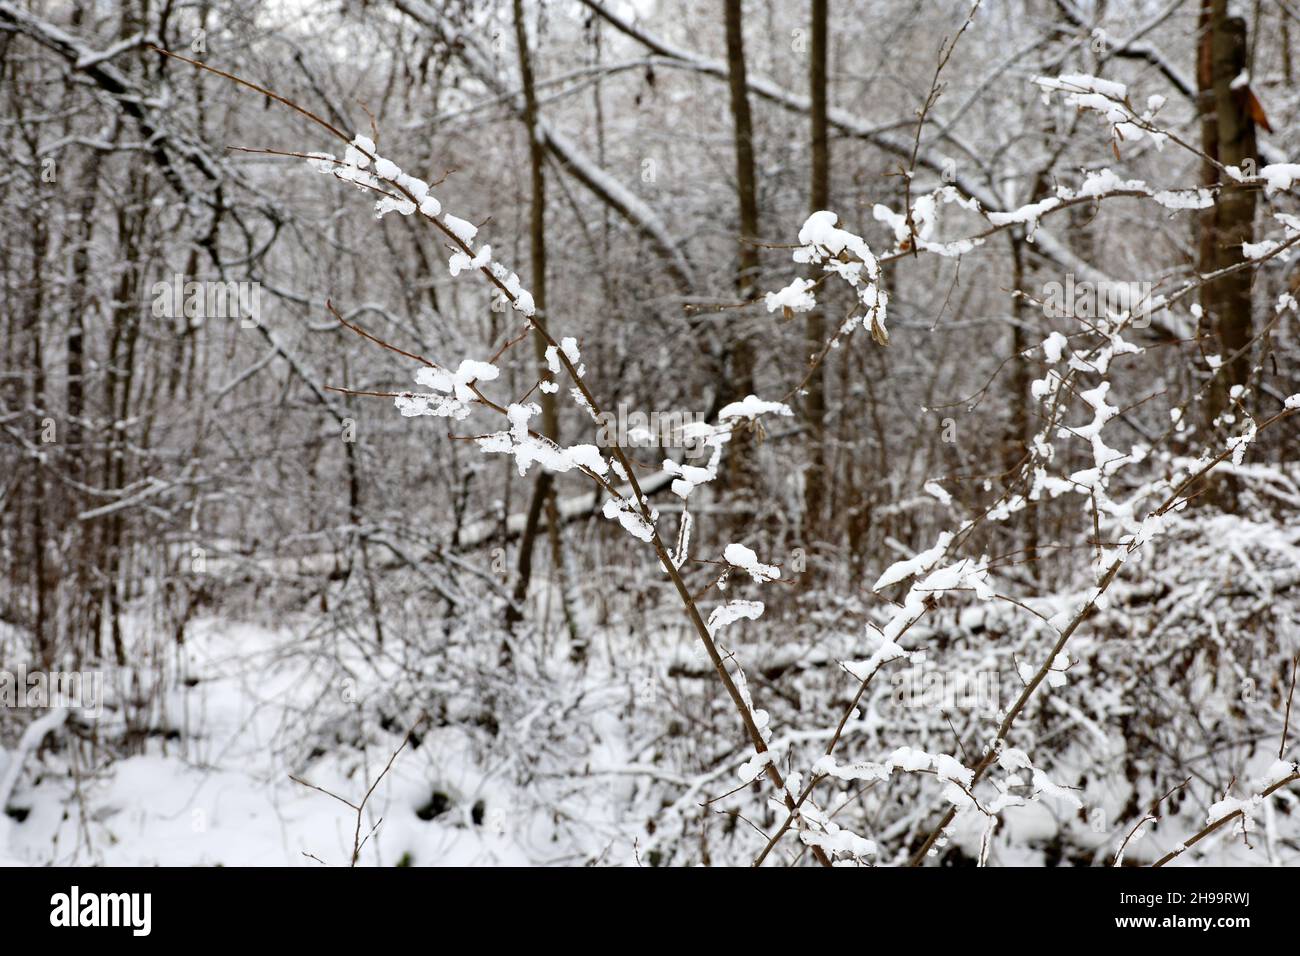 Forêt d'hiver, arbres enneigés.La nature après les chutes de neige, temps froid Banque D'Images